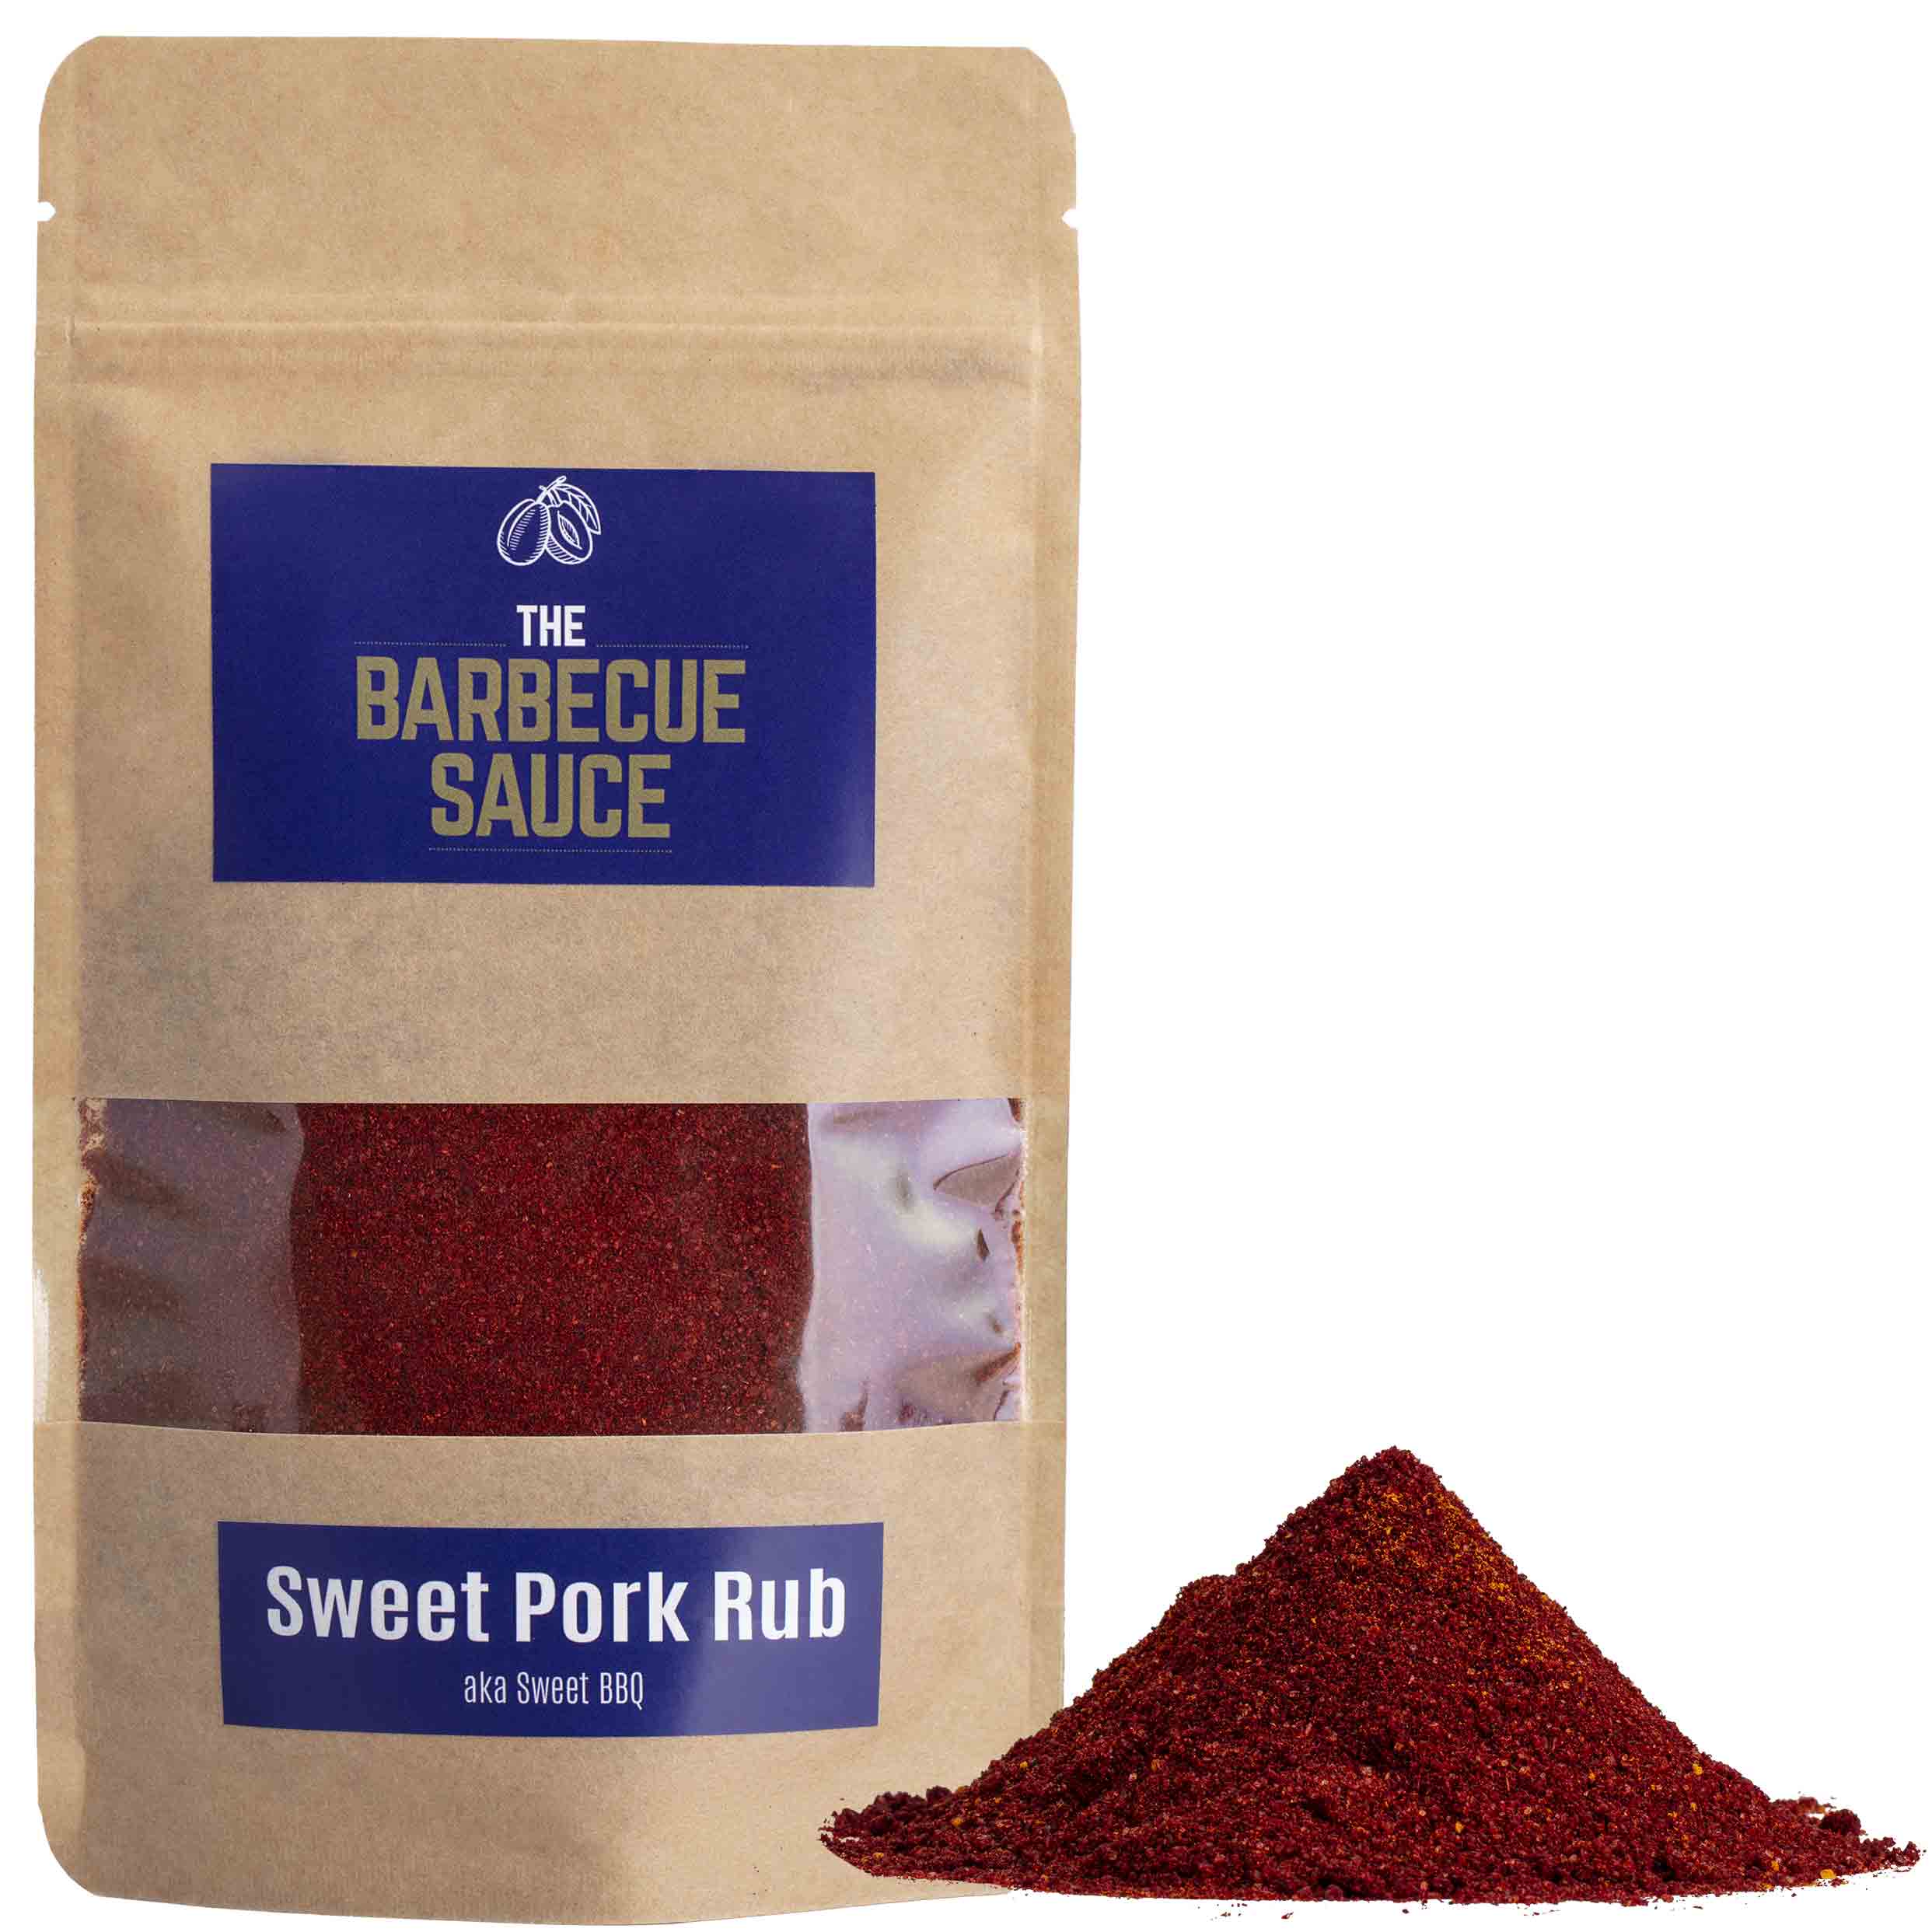 Sweet Pork Rub ist die perfekte Ergänzung für deine nächsten Rippchen oder Burned Ends, sei es Rindfleisch oder gerade Schweinefleisch.